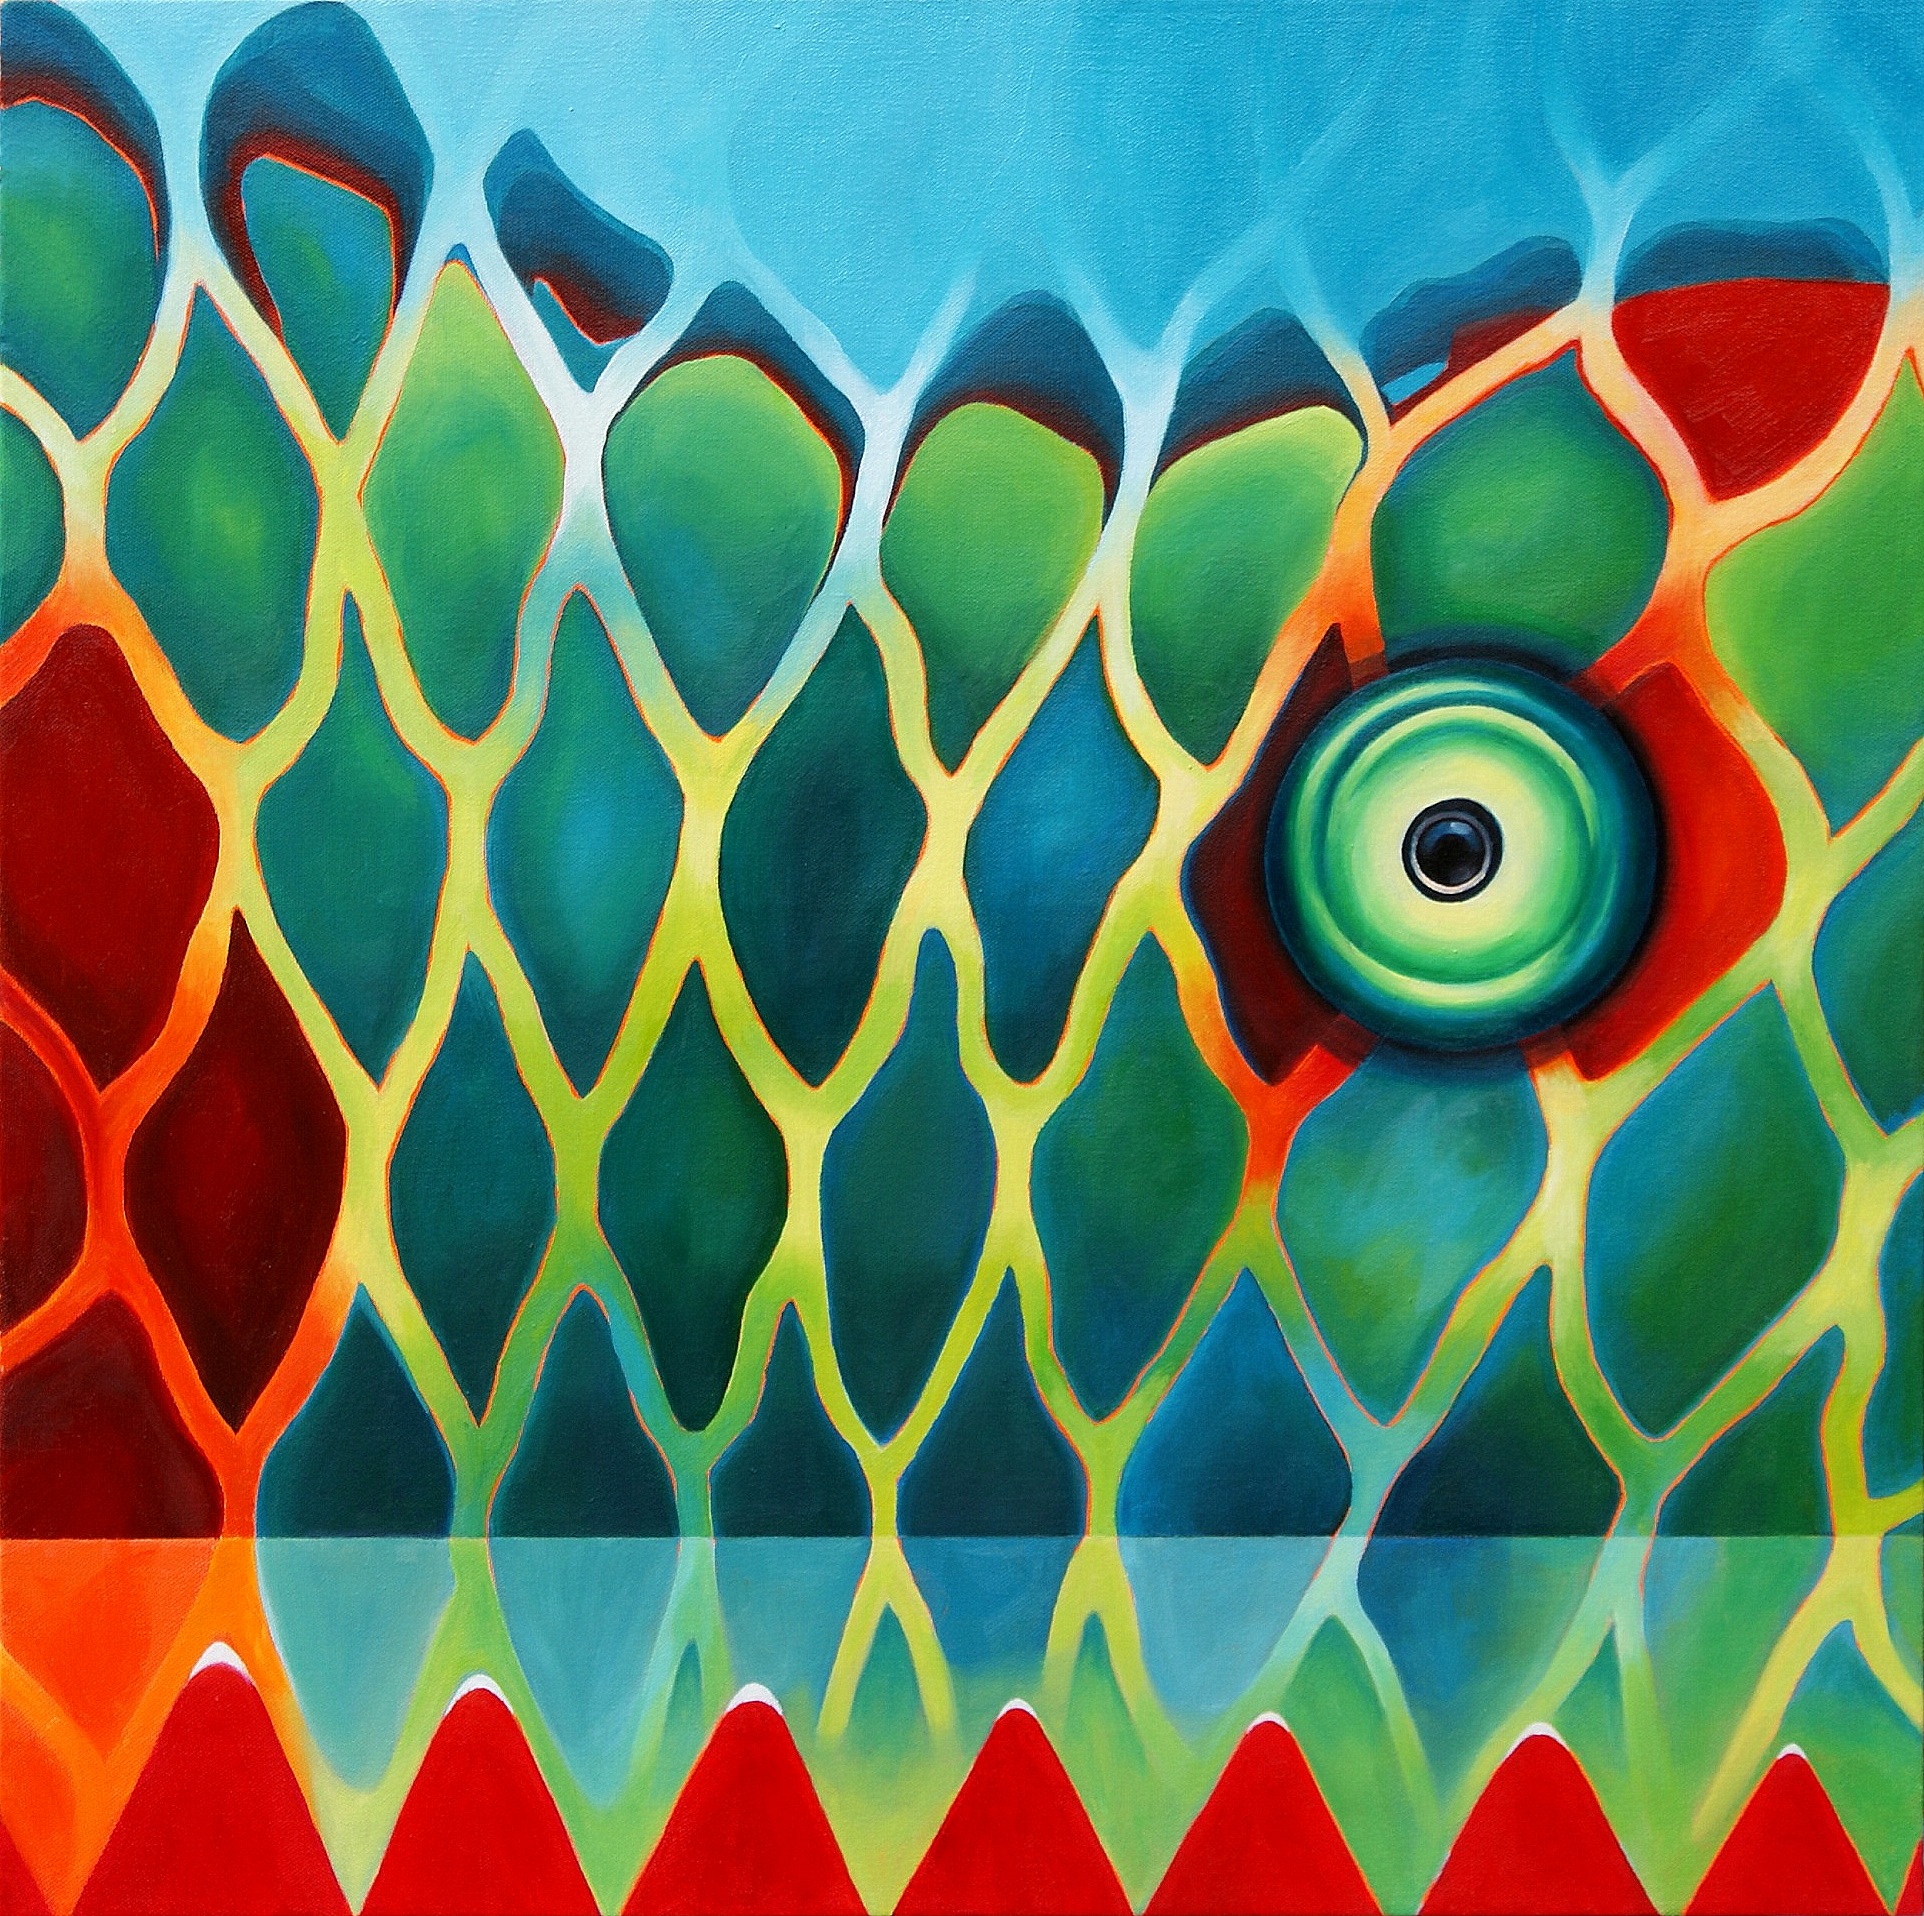 Chameleon Net (2019, oil on canvas)